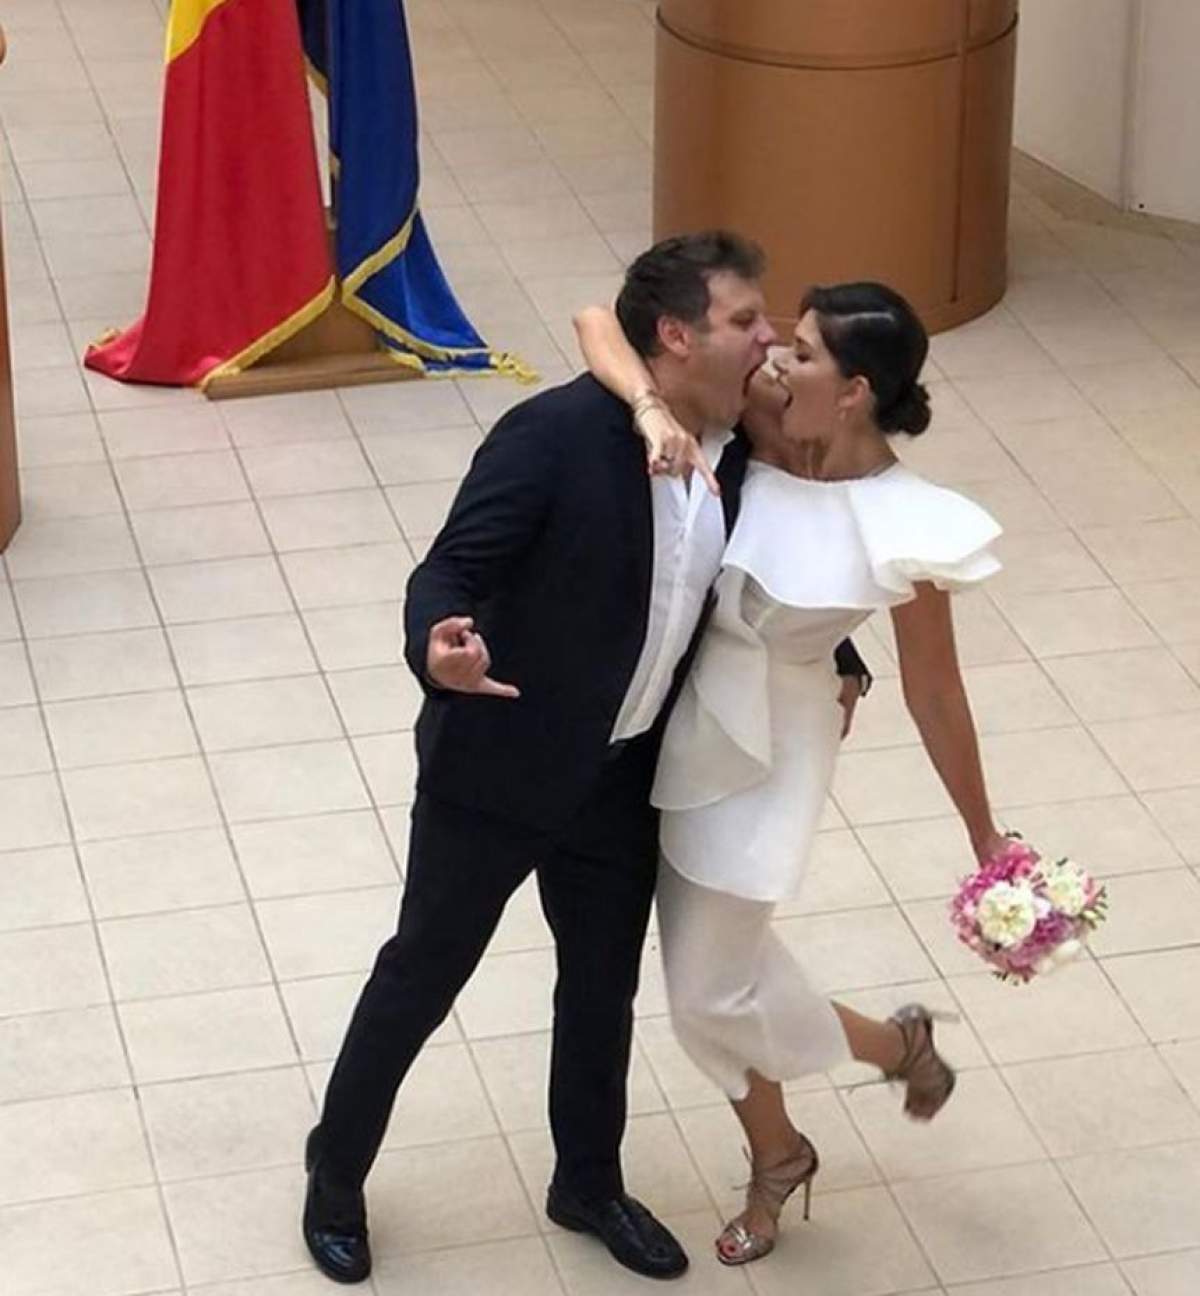 Veste mare în showbiz! Alina Pușcaș s-a căsătorit astăzi. Primele imagini de la nuntă